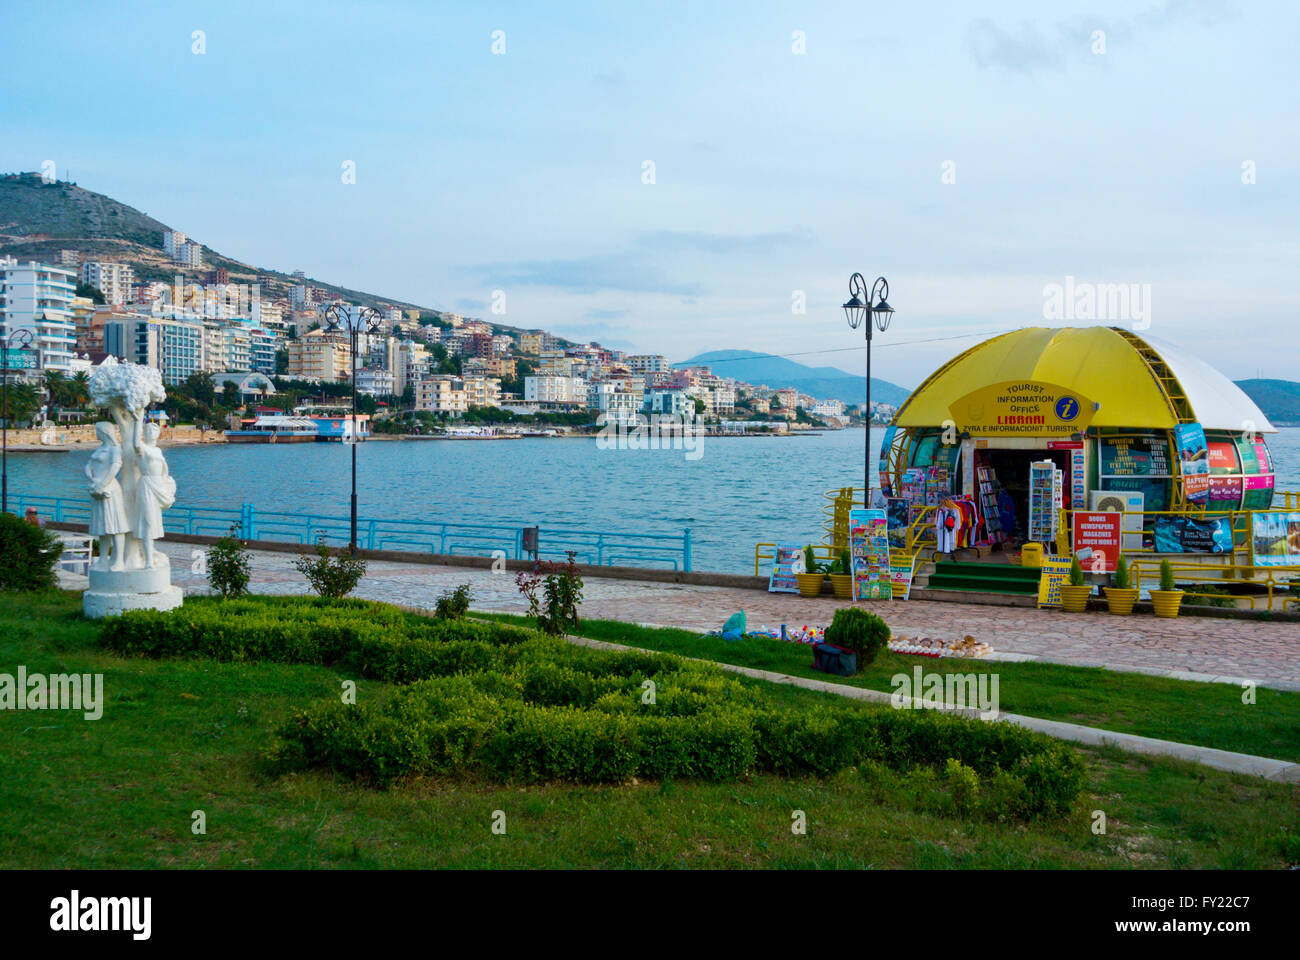 Oficina de información turística, Sheshi Limanit, Esplanade, paseo marítimo, centro de Saranda, Albania Foto de stock